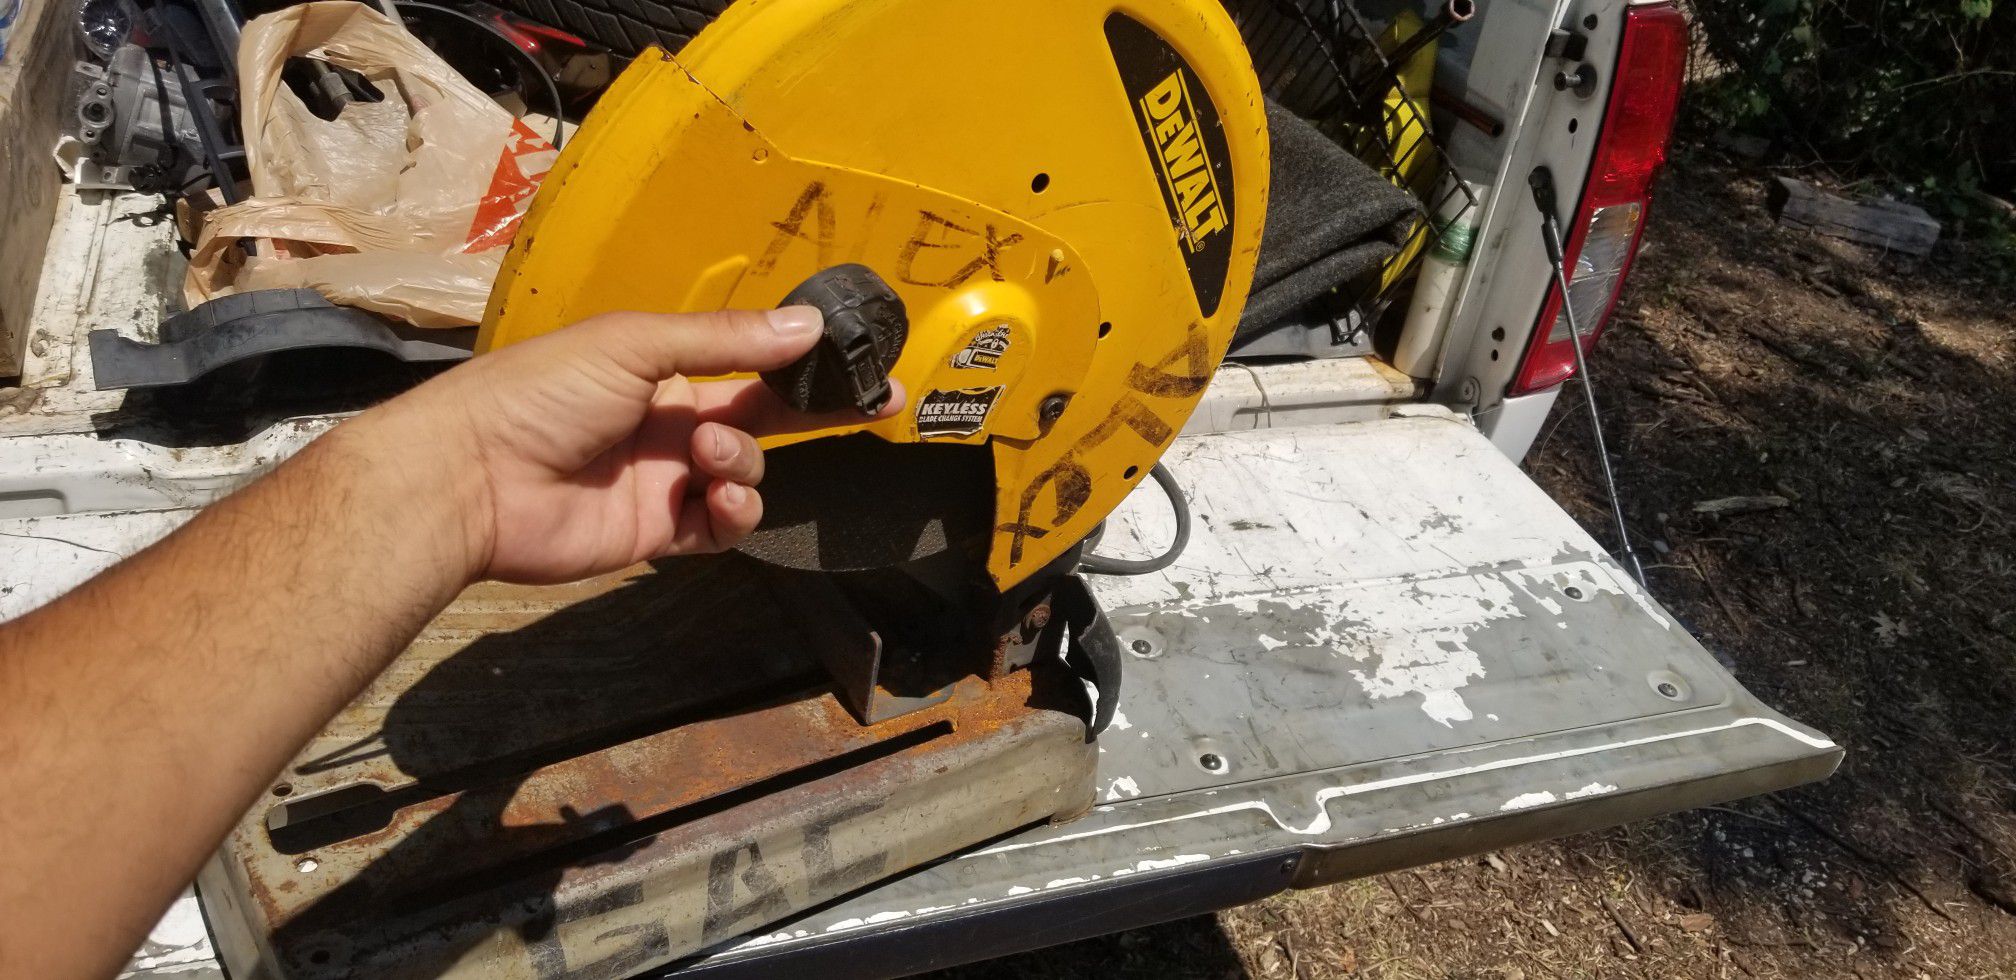 Dewalt 14 inch chop saw